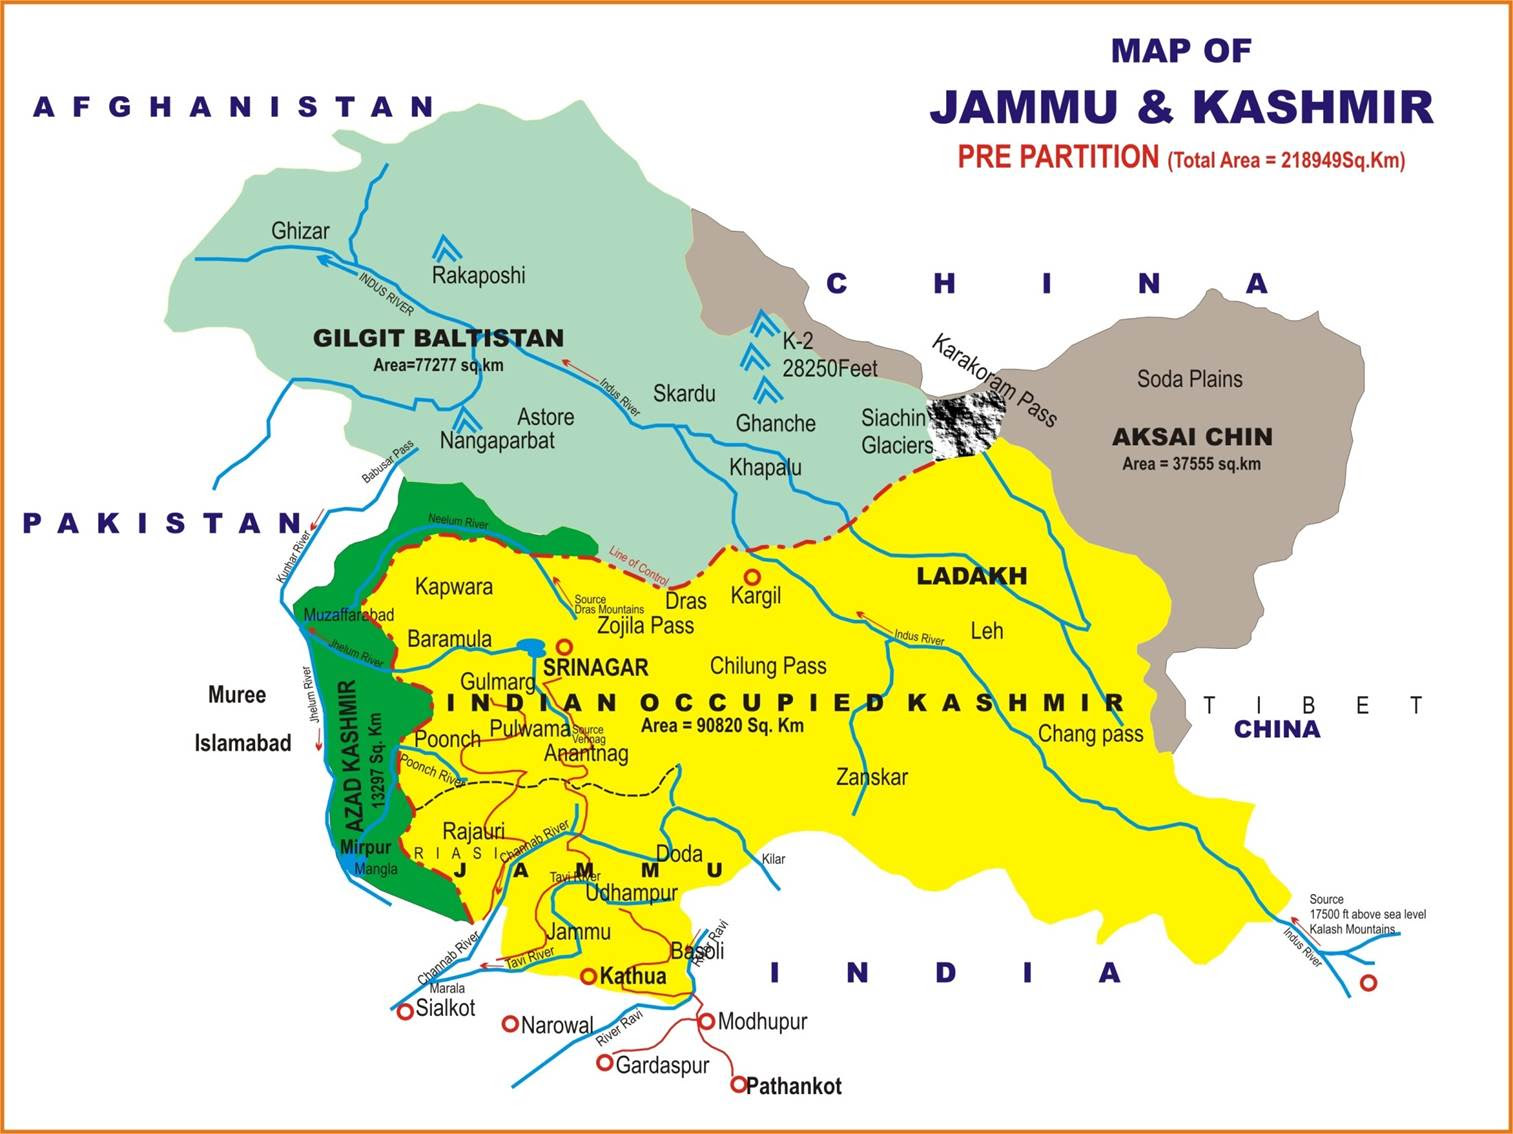 map of jammu kashmir tourism